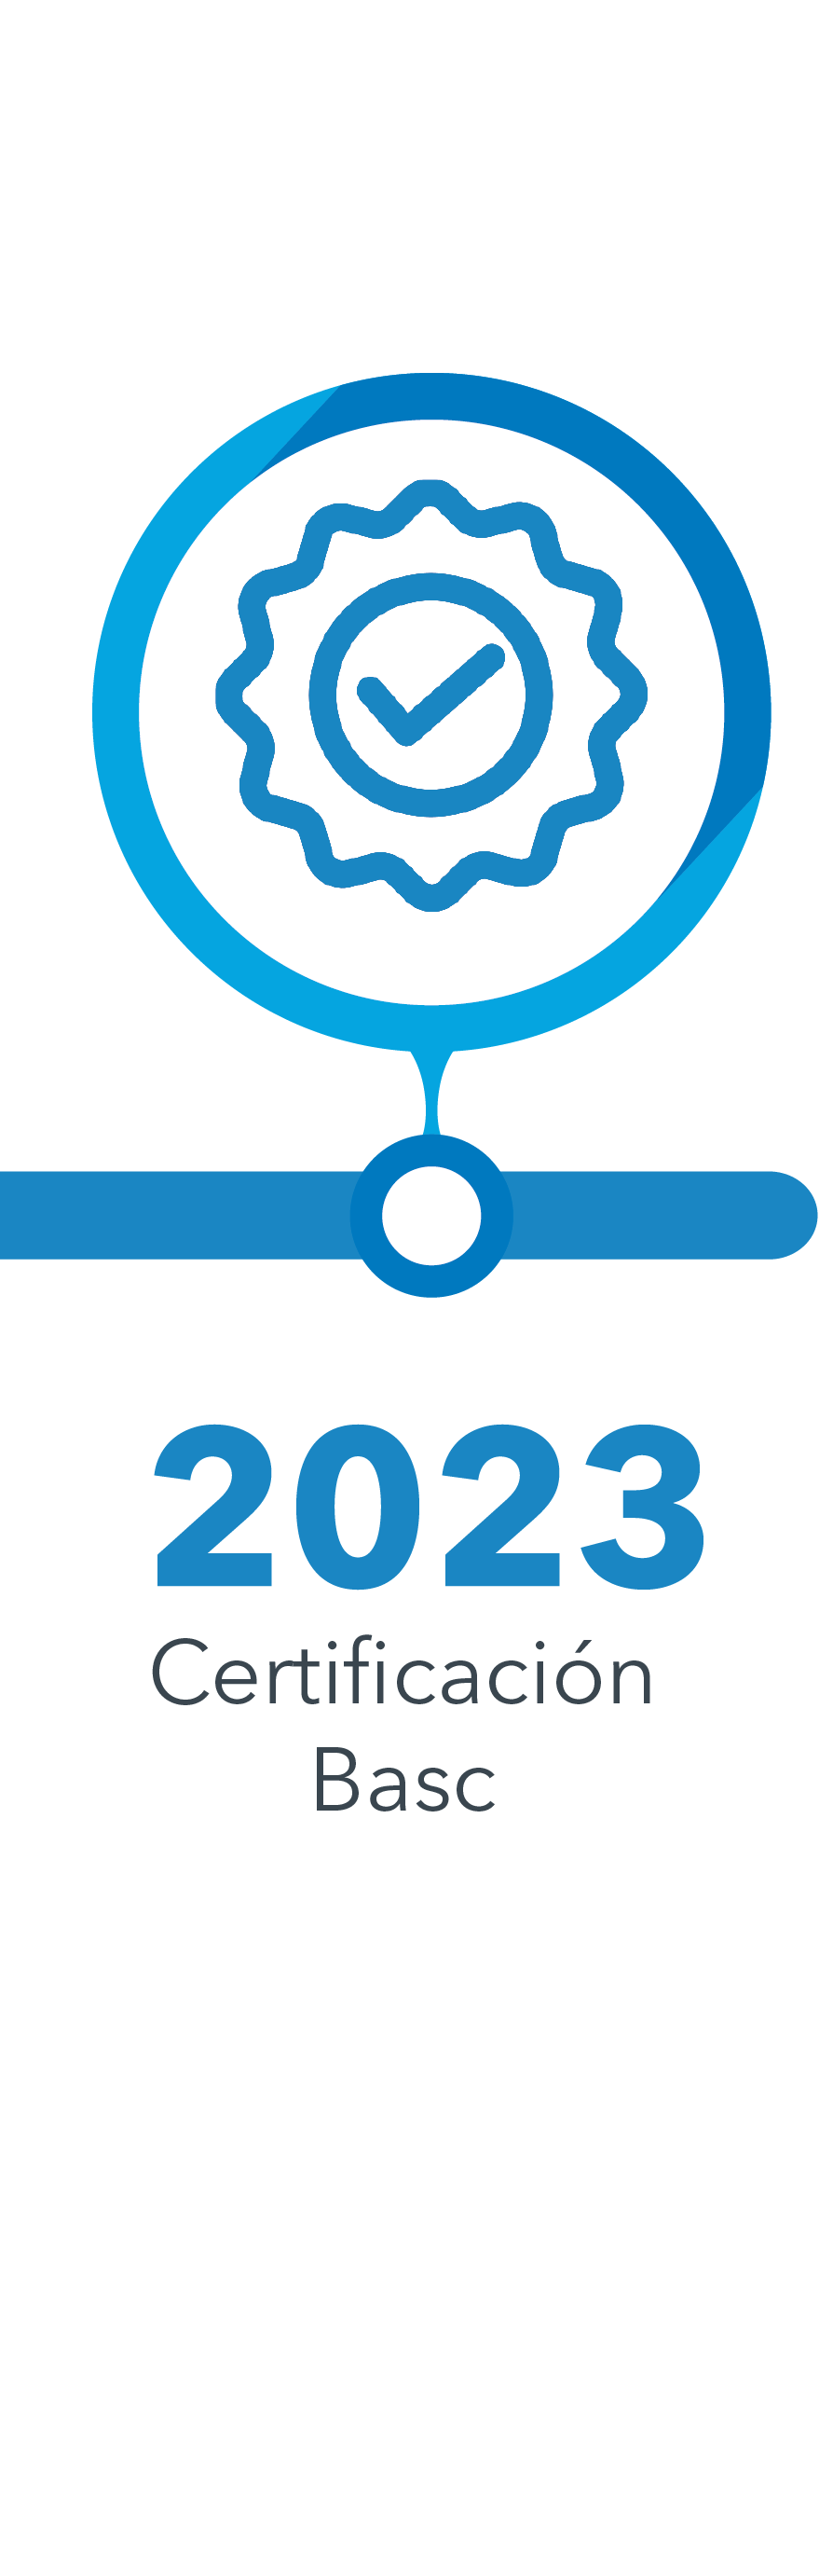 Año 2023 - Obtenemos la certificacion Basc